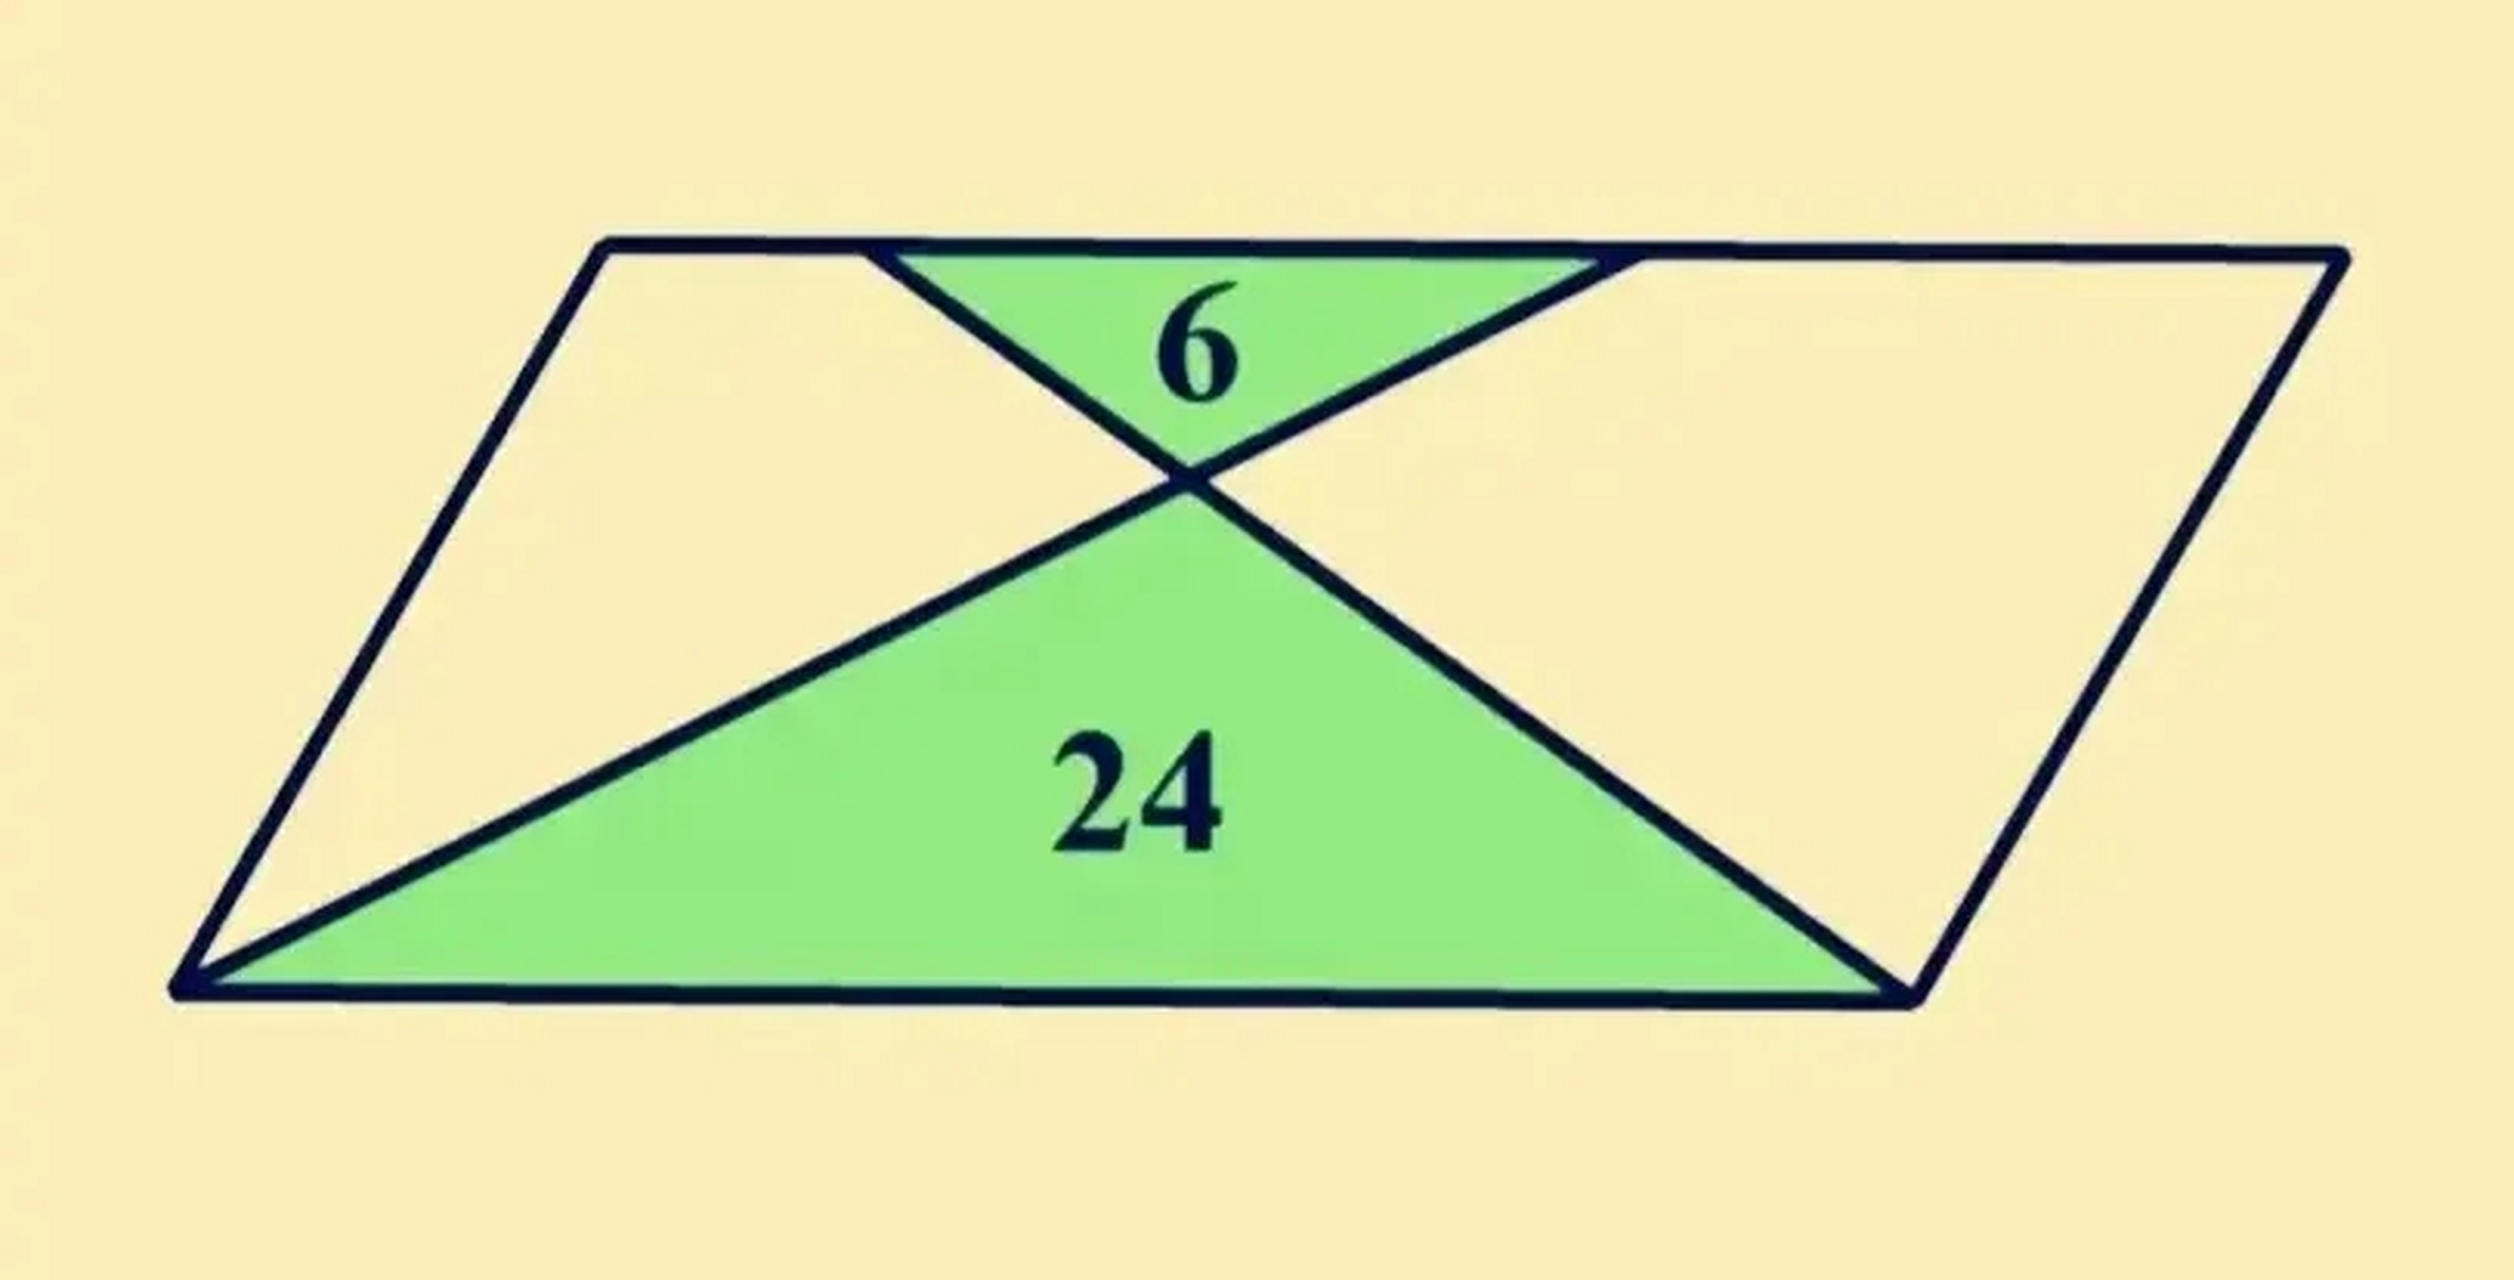 如图所示,平行四边形中,两个三角形面积分别是6和24,求平行四边形面积